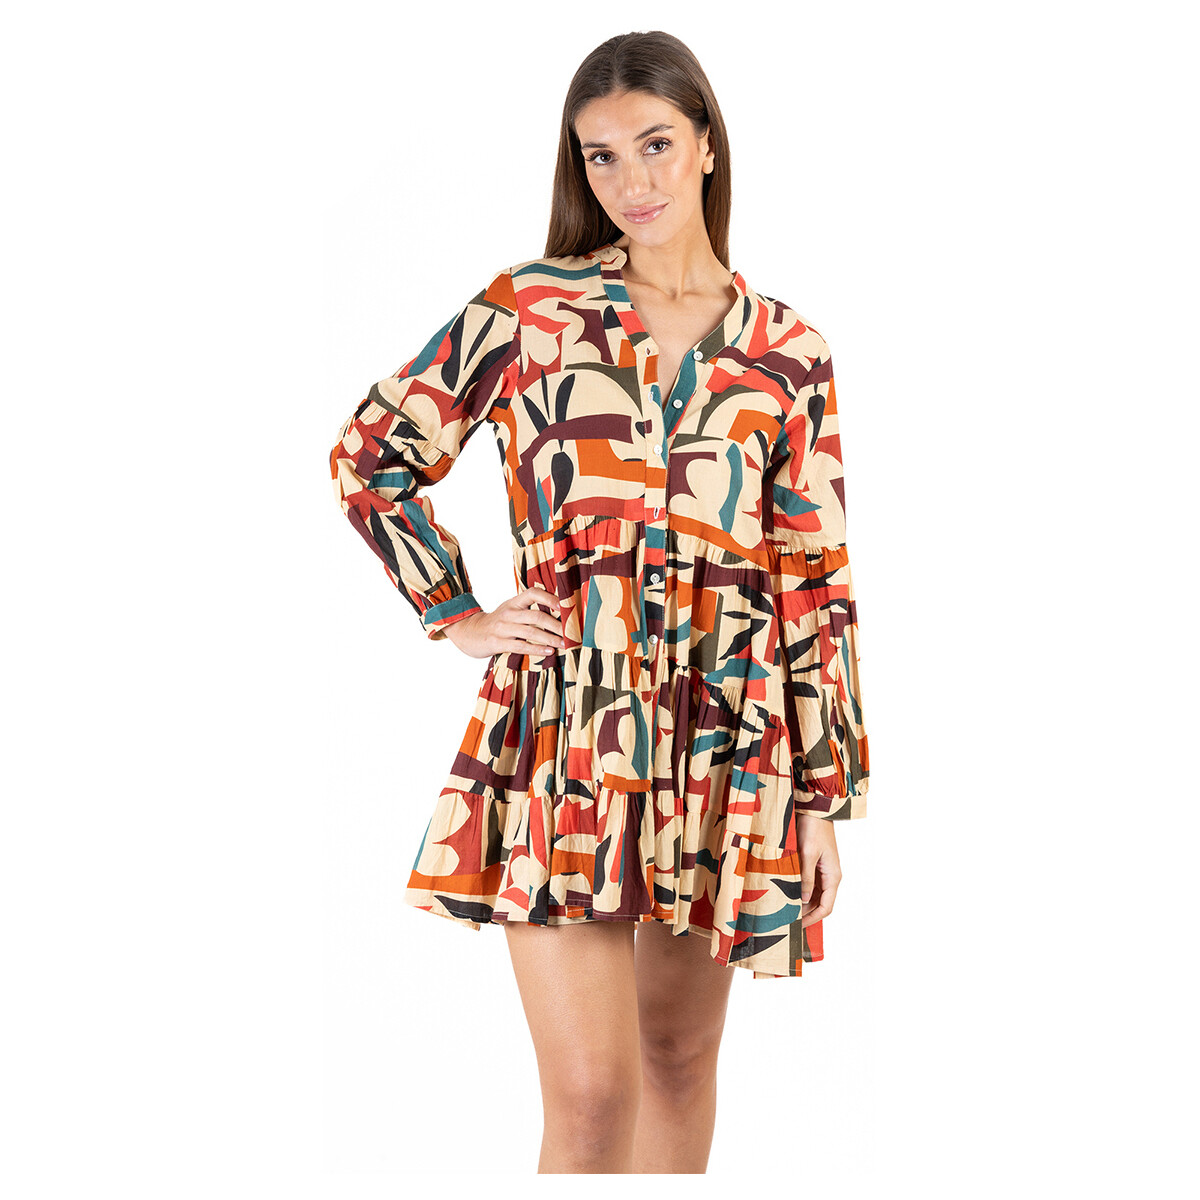 textil Mujer Vestidos cortos Isla Bonita By Sigris Vestido Corto Naranja